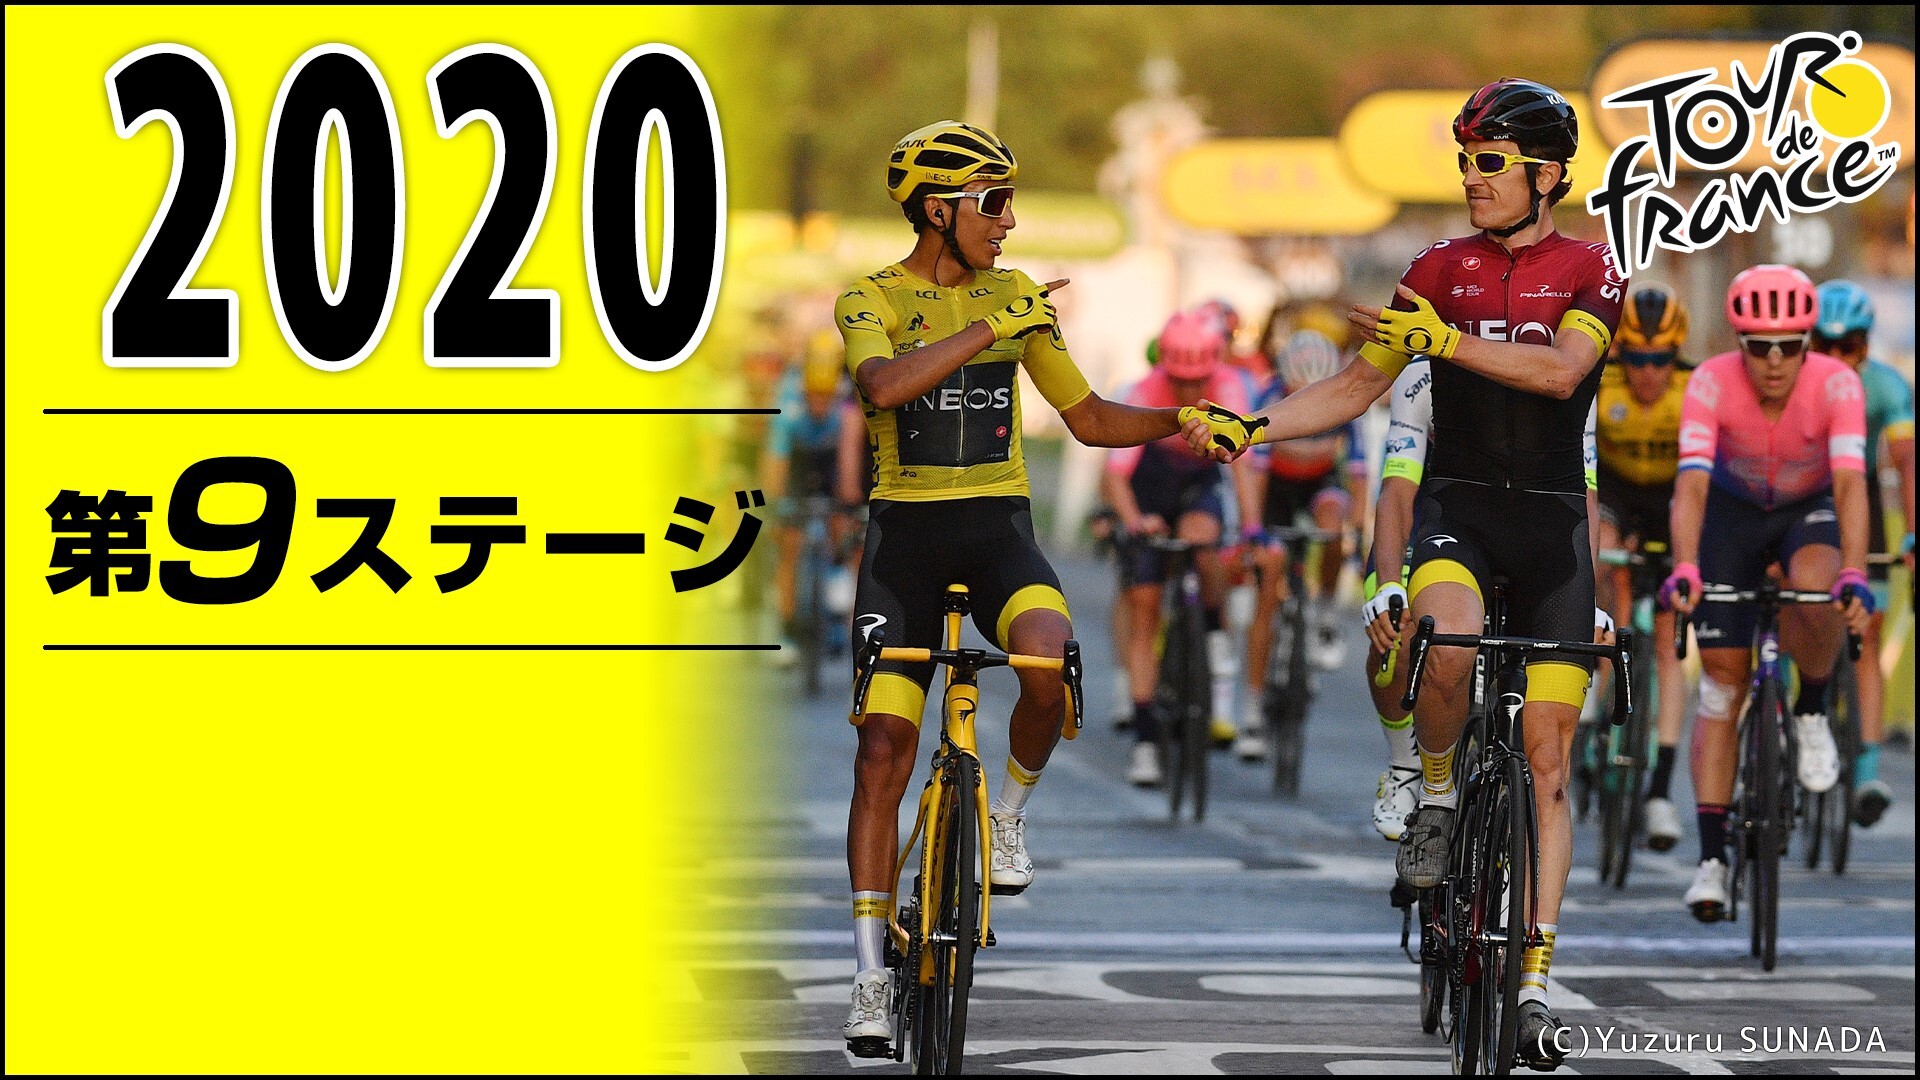 Cycle ツール ド フランス 第9ステージ 09 06 日 55開始 ニコニコ生放送